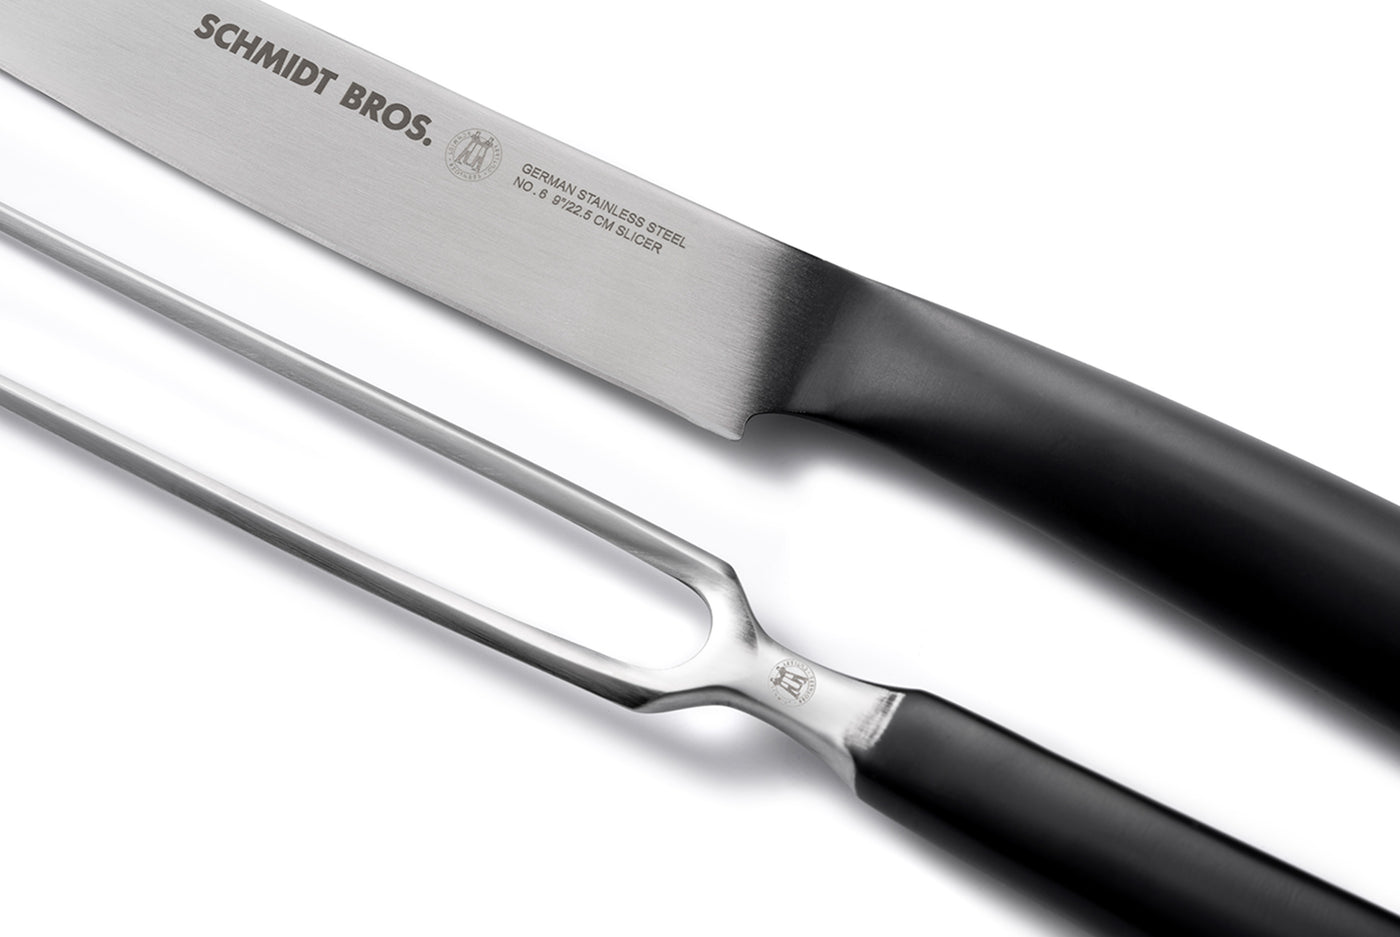 Schmidt Brothers Bonded Teak Knives, High-Carbon Steel on Food52